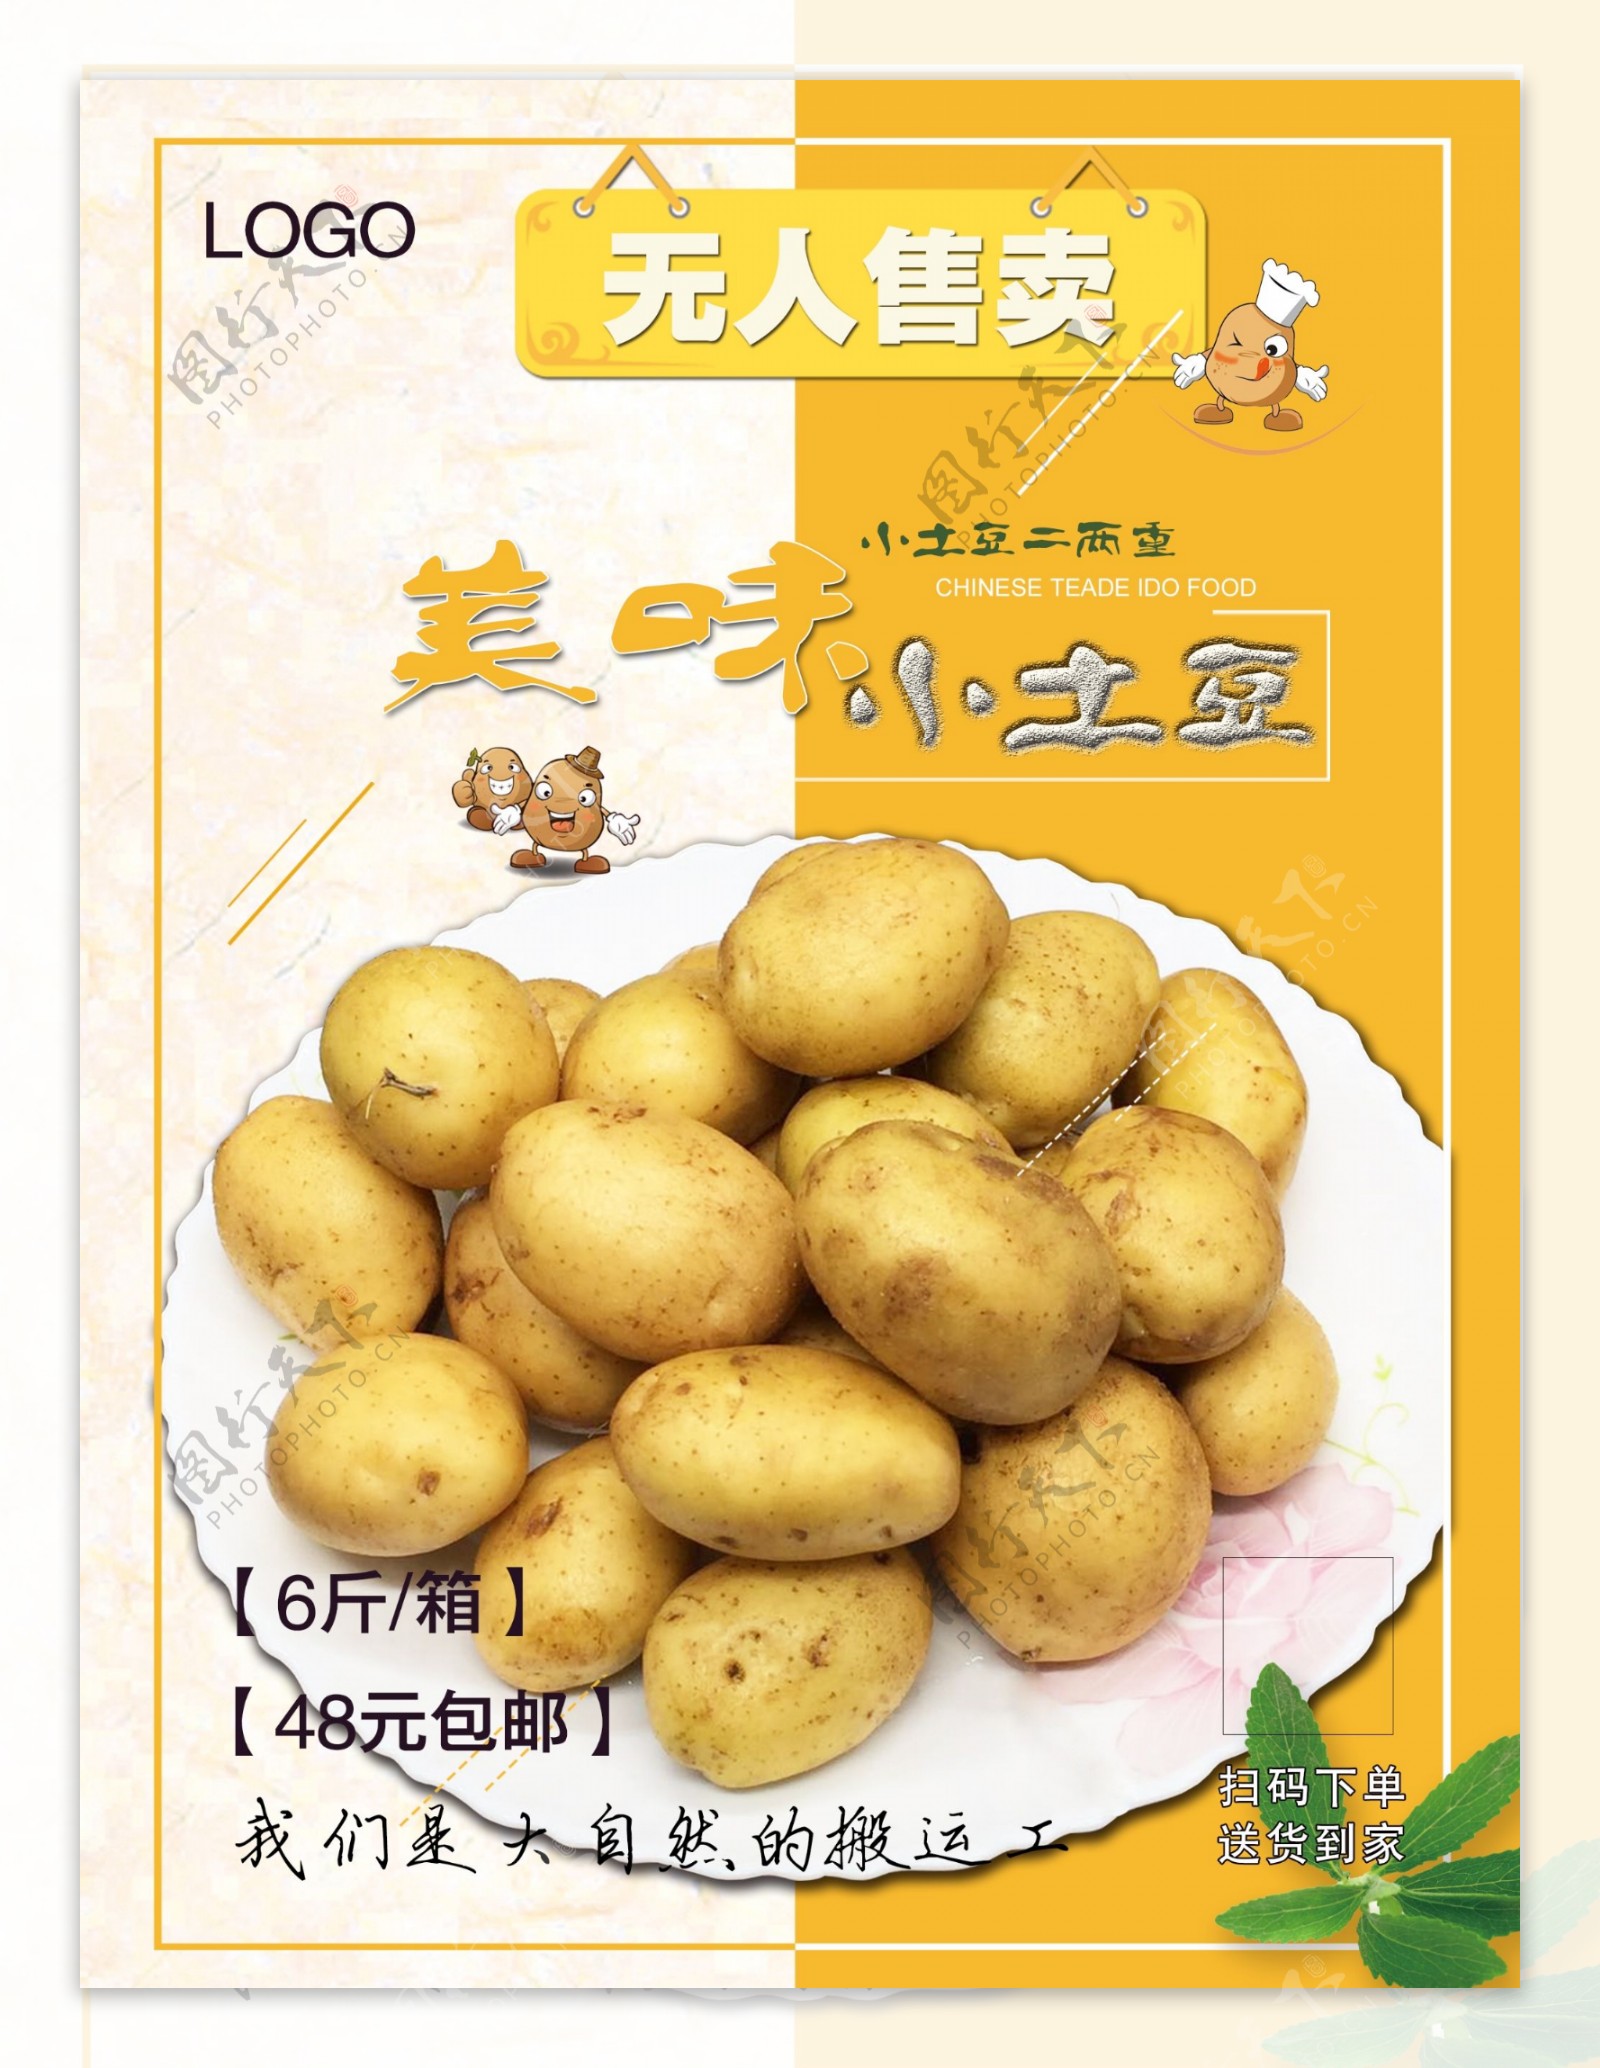 小土豆宣传促销海报